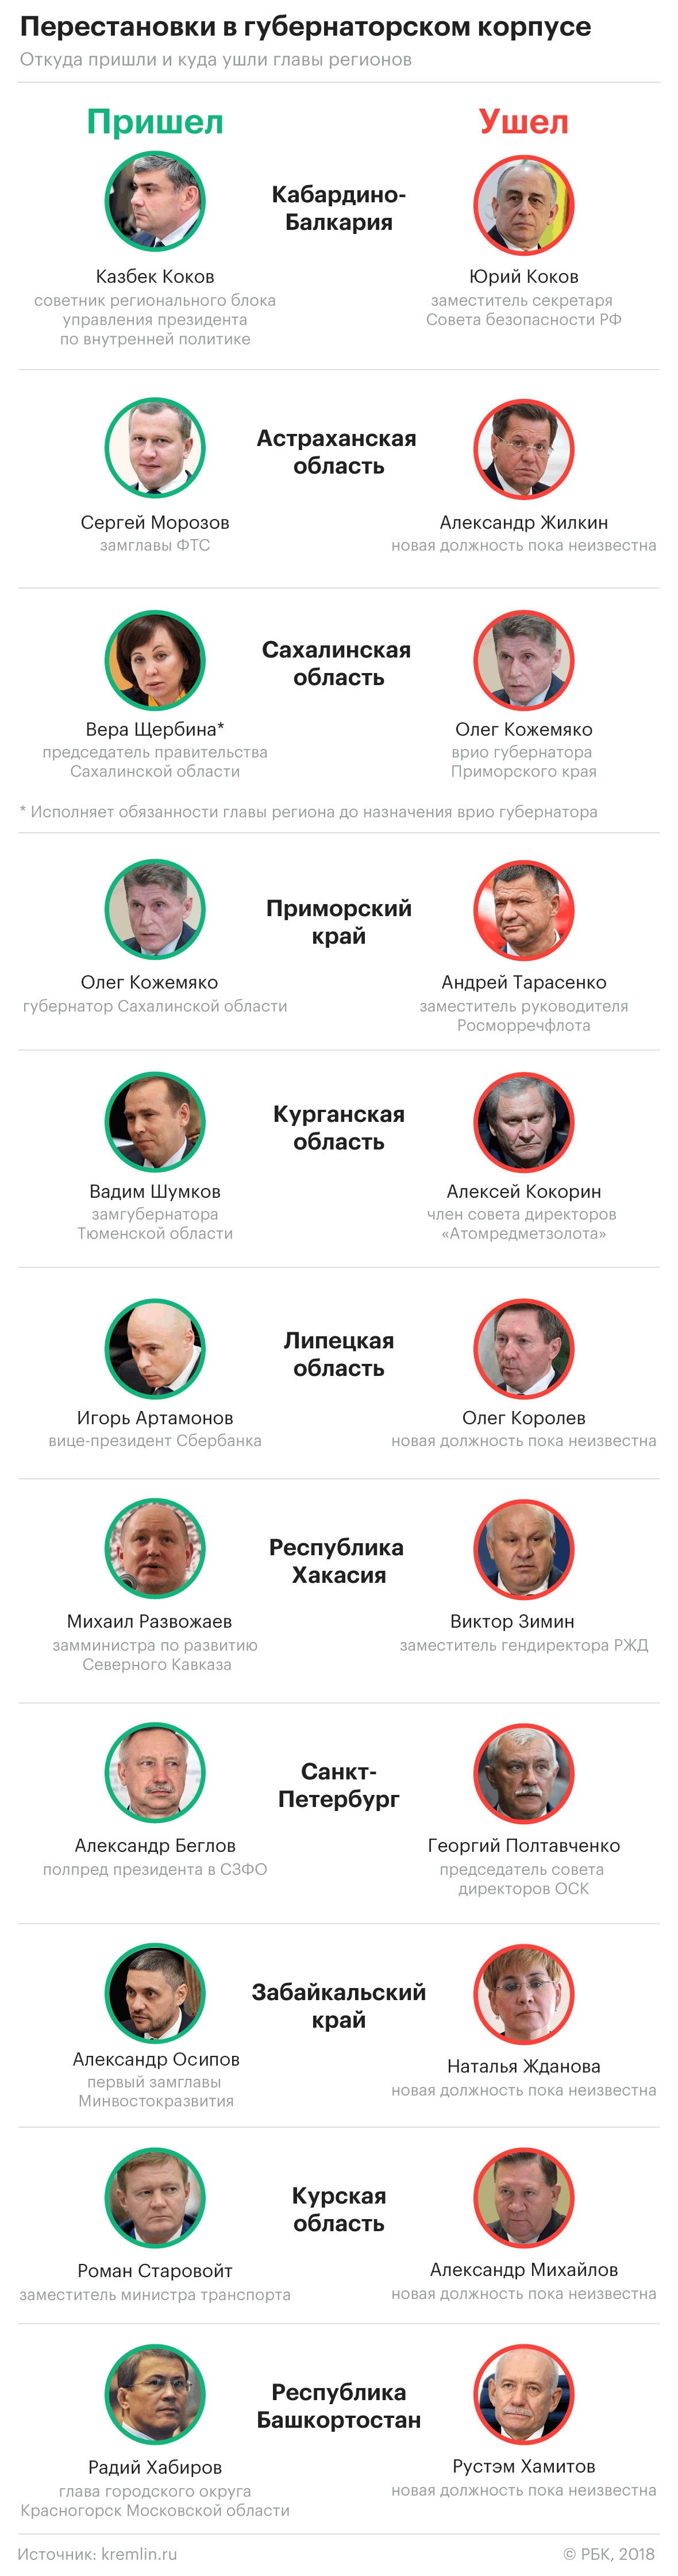 Путин отправил Полтавченко в отставку с поста губернатора Петербурга